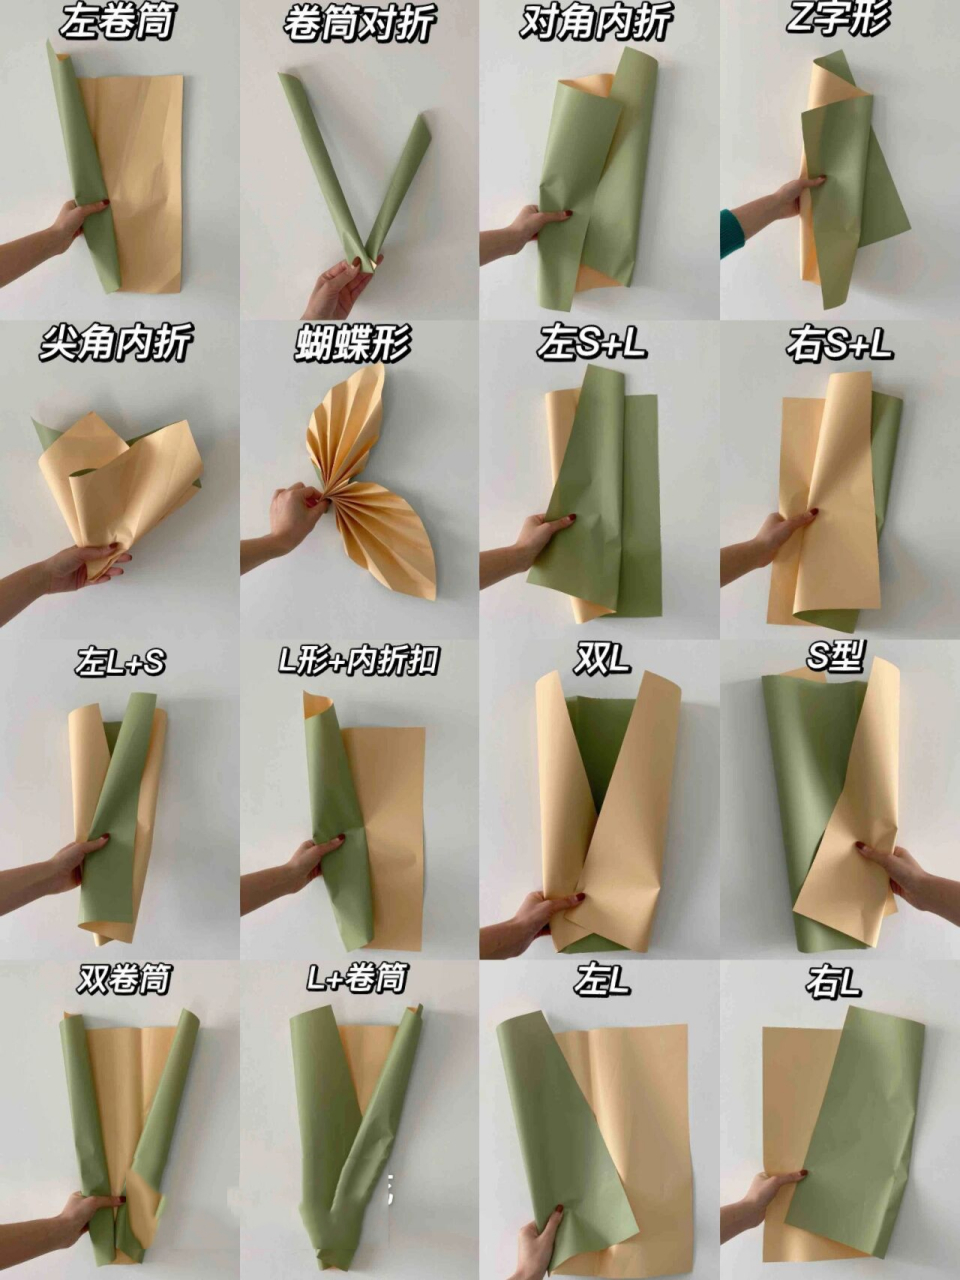 花束包装方法合集‖16种新颖方法get77 想学习包花的集美看过来了